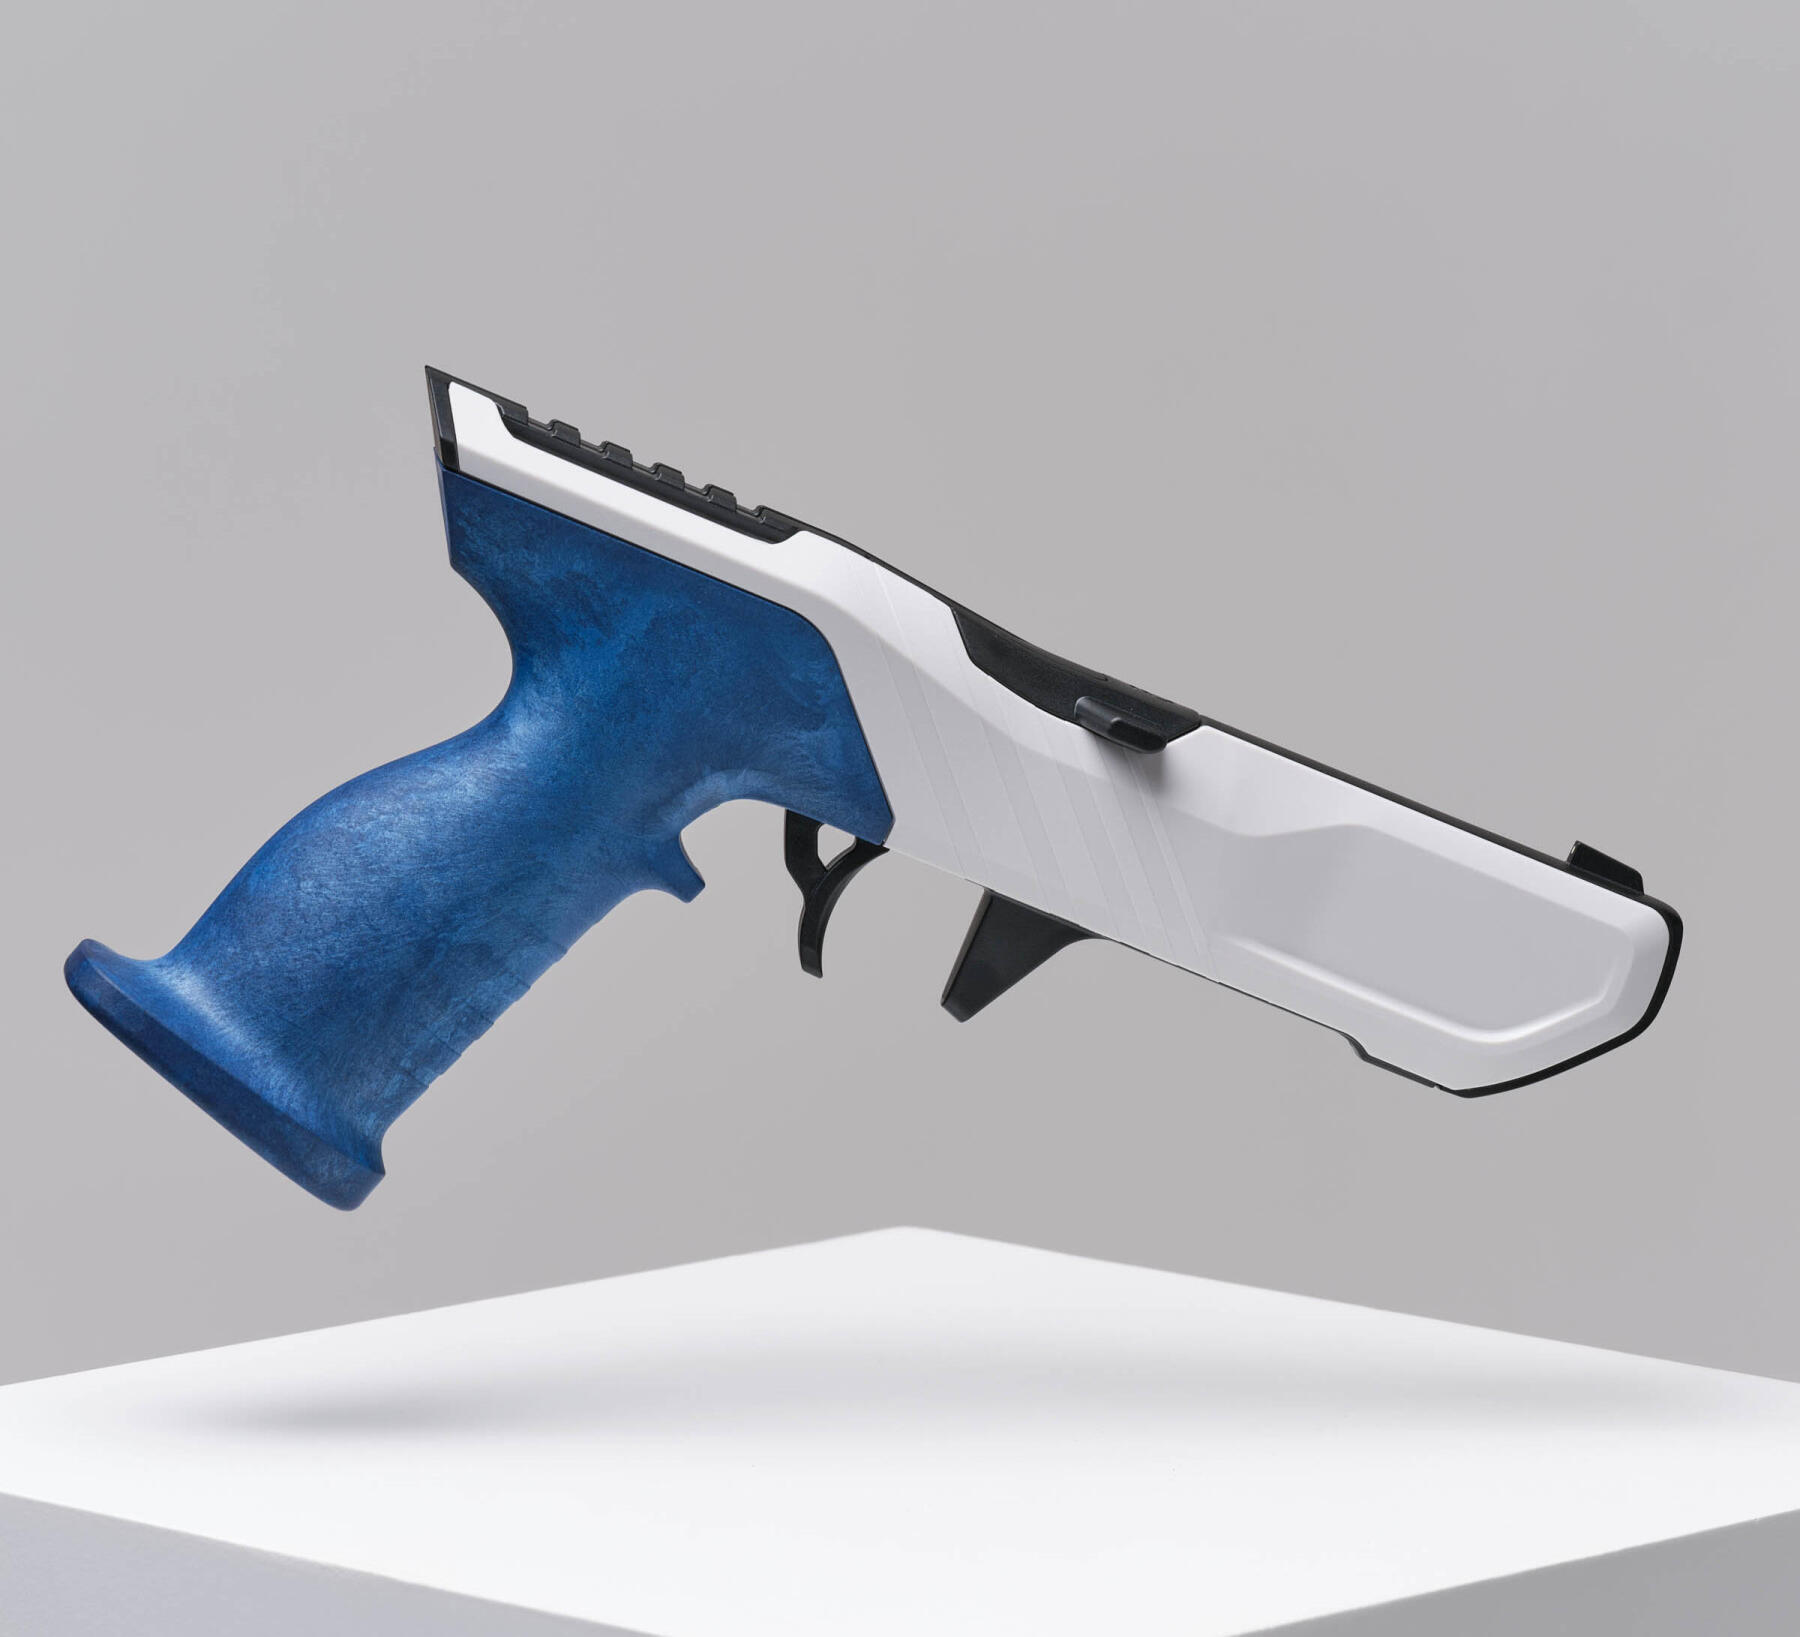 Pistolet de tir laser : entretien et réparation: notice, réparation